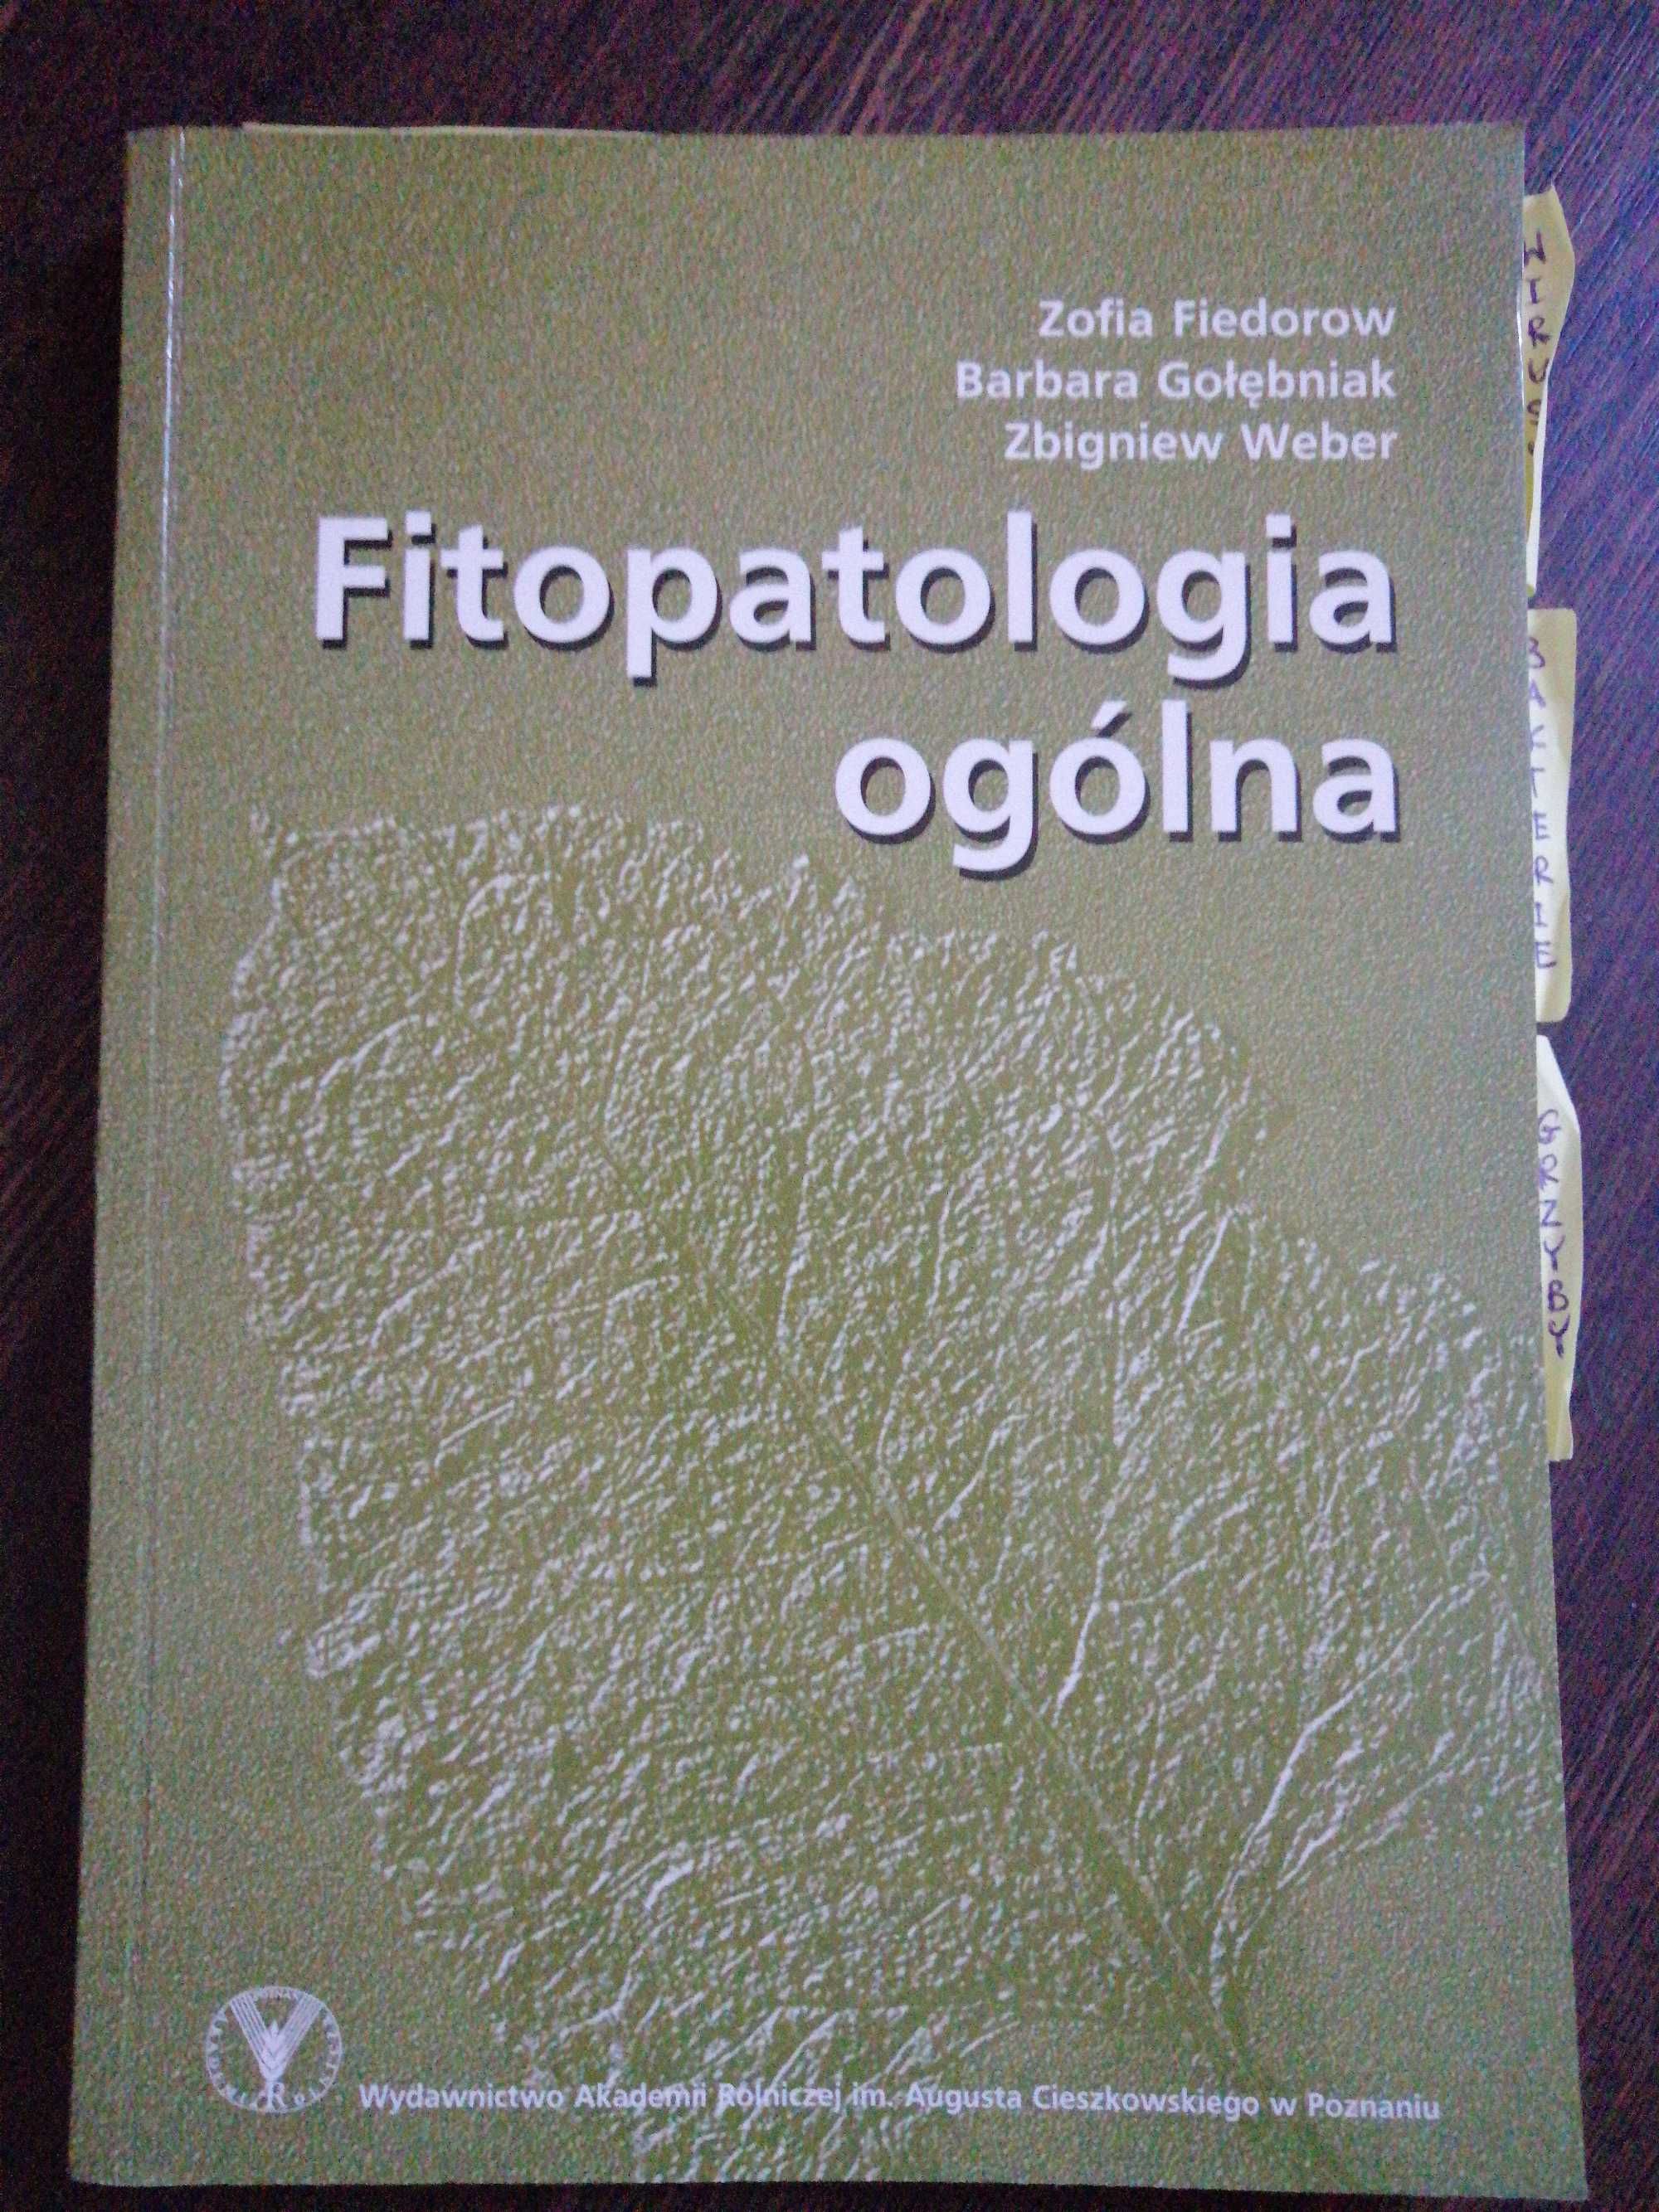 Książka Fitopatologia ogólna Zofia Fiedorowicz B. Gołębniak..